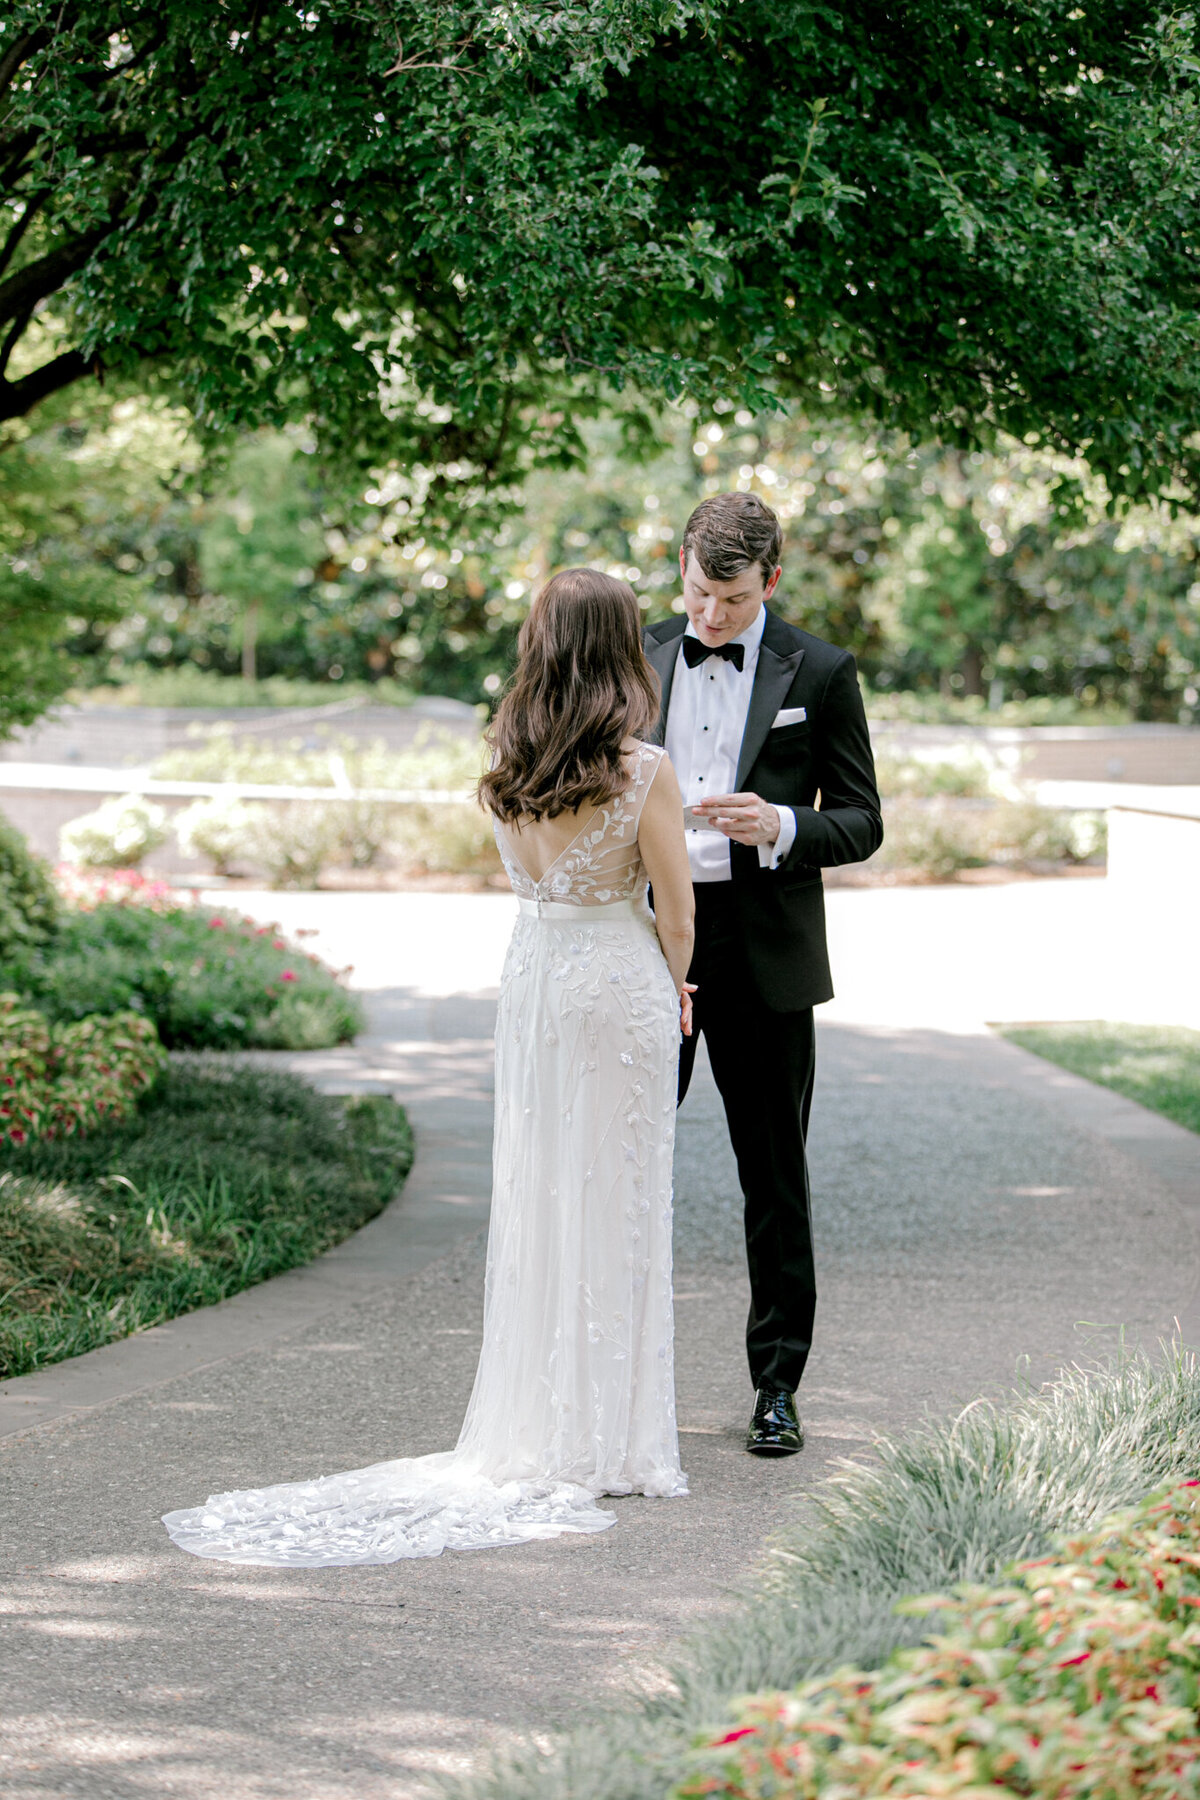 Gena & Matt's Wedding at the Dallas Arboretum | Dallas Wedding Photographer | Sami Kathryn Photography-83